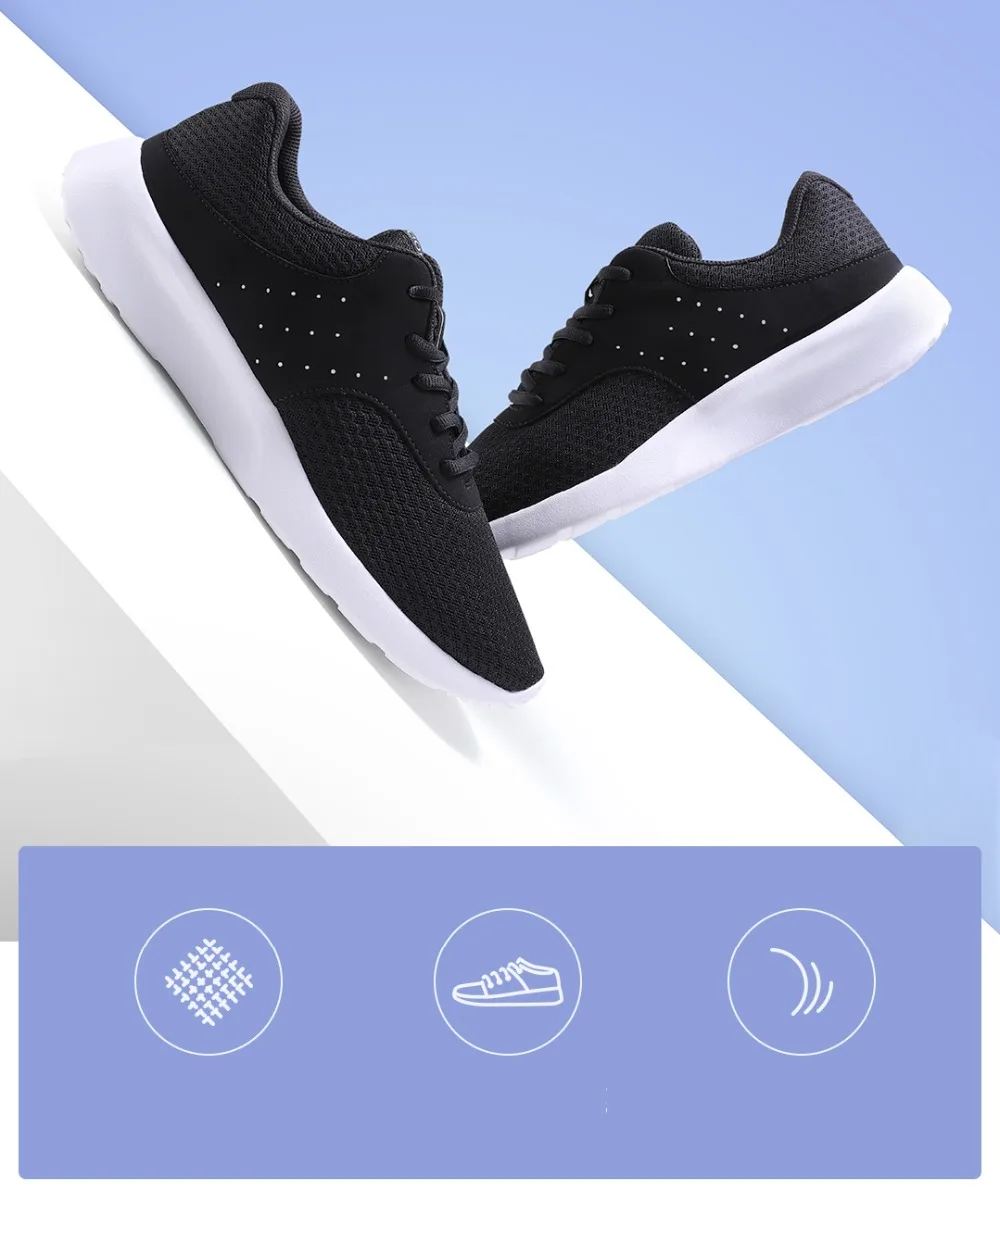 Xiaomi Mijia youpin спортивная черная обувь 90 точек легкая дышащая Освежающая сетка удобная и стабильная для мужчин